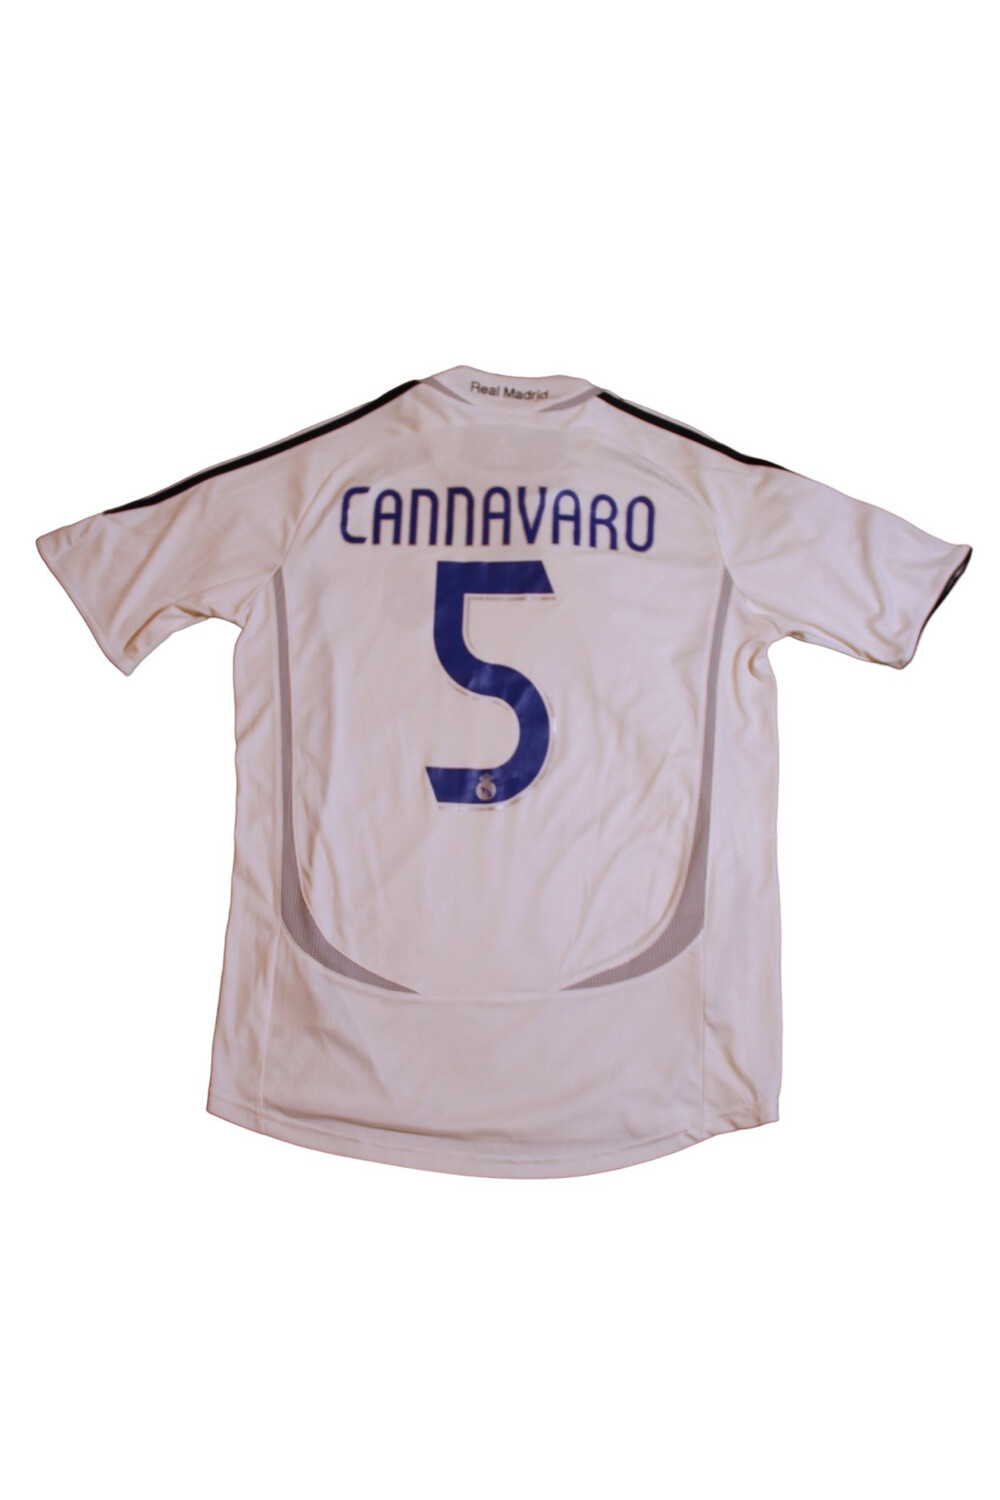 Real Madrid 2006/07 Home #5 CANNAVARO